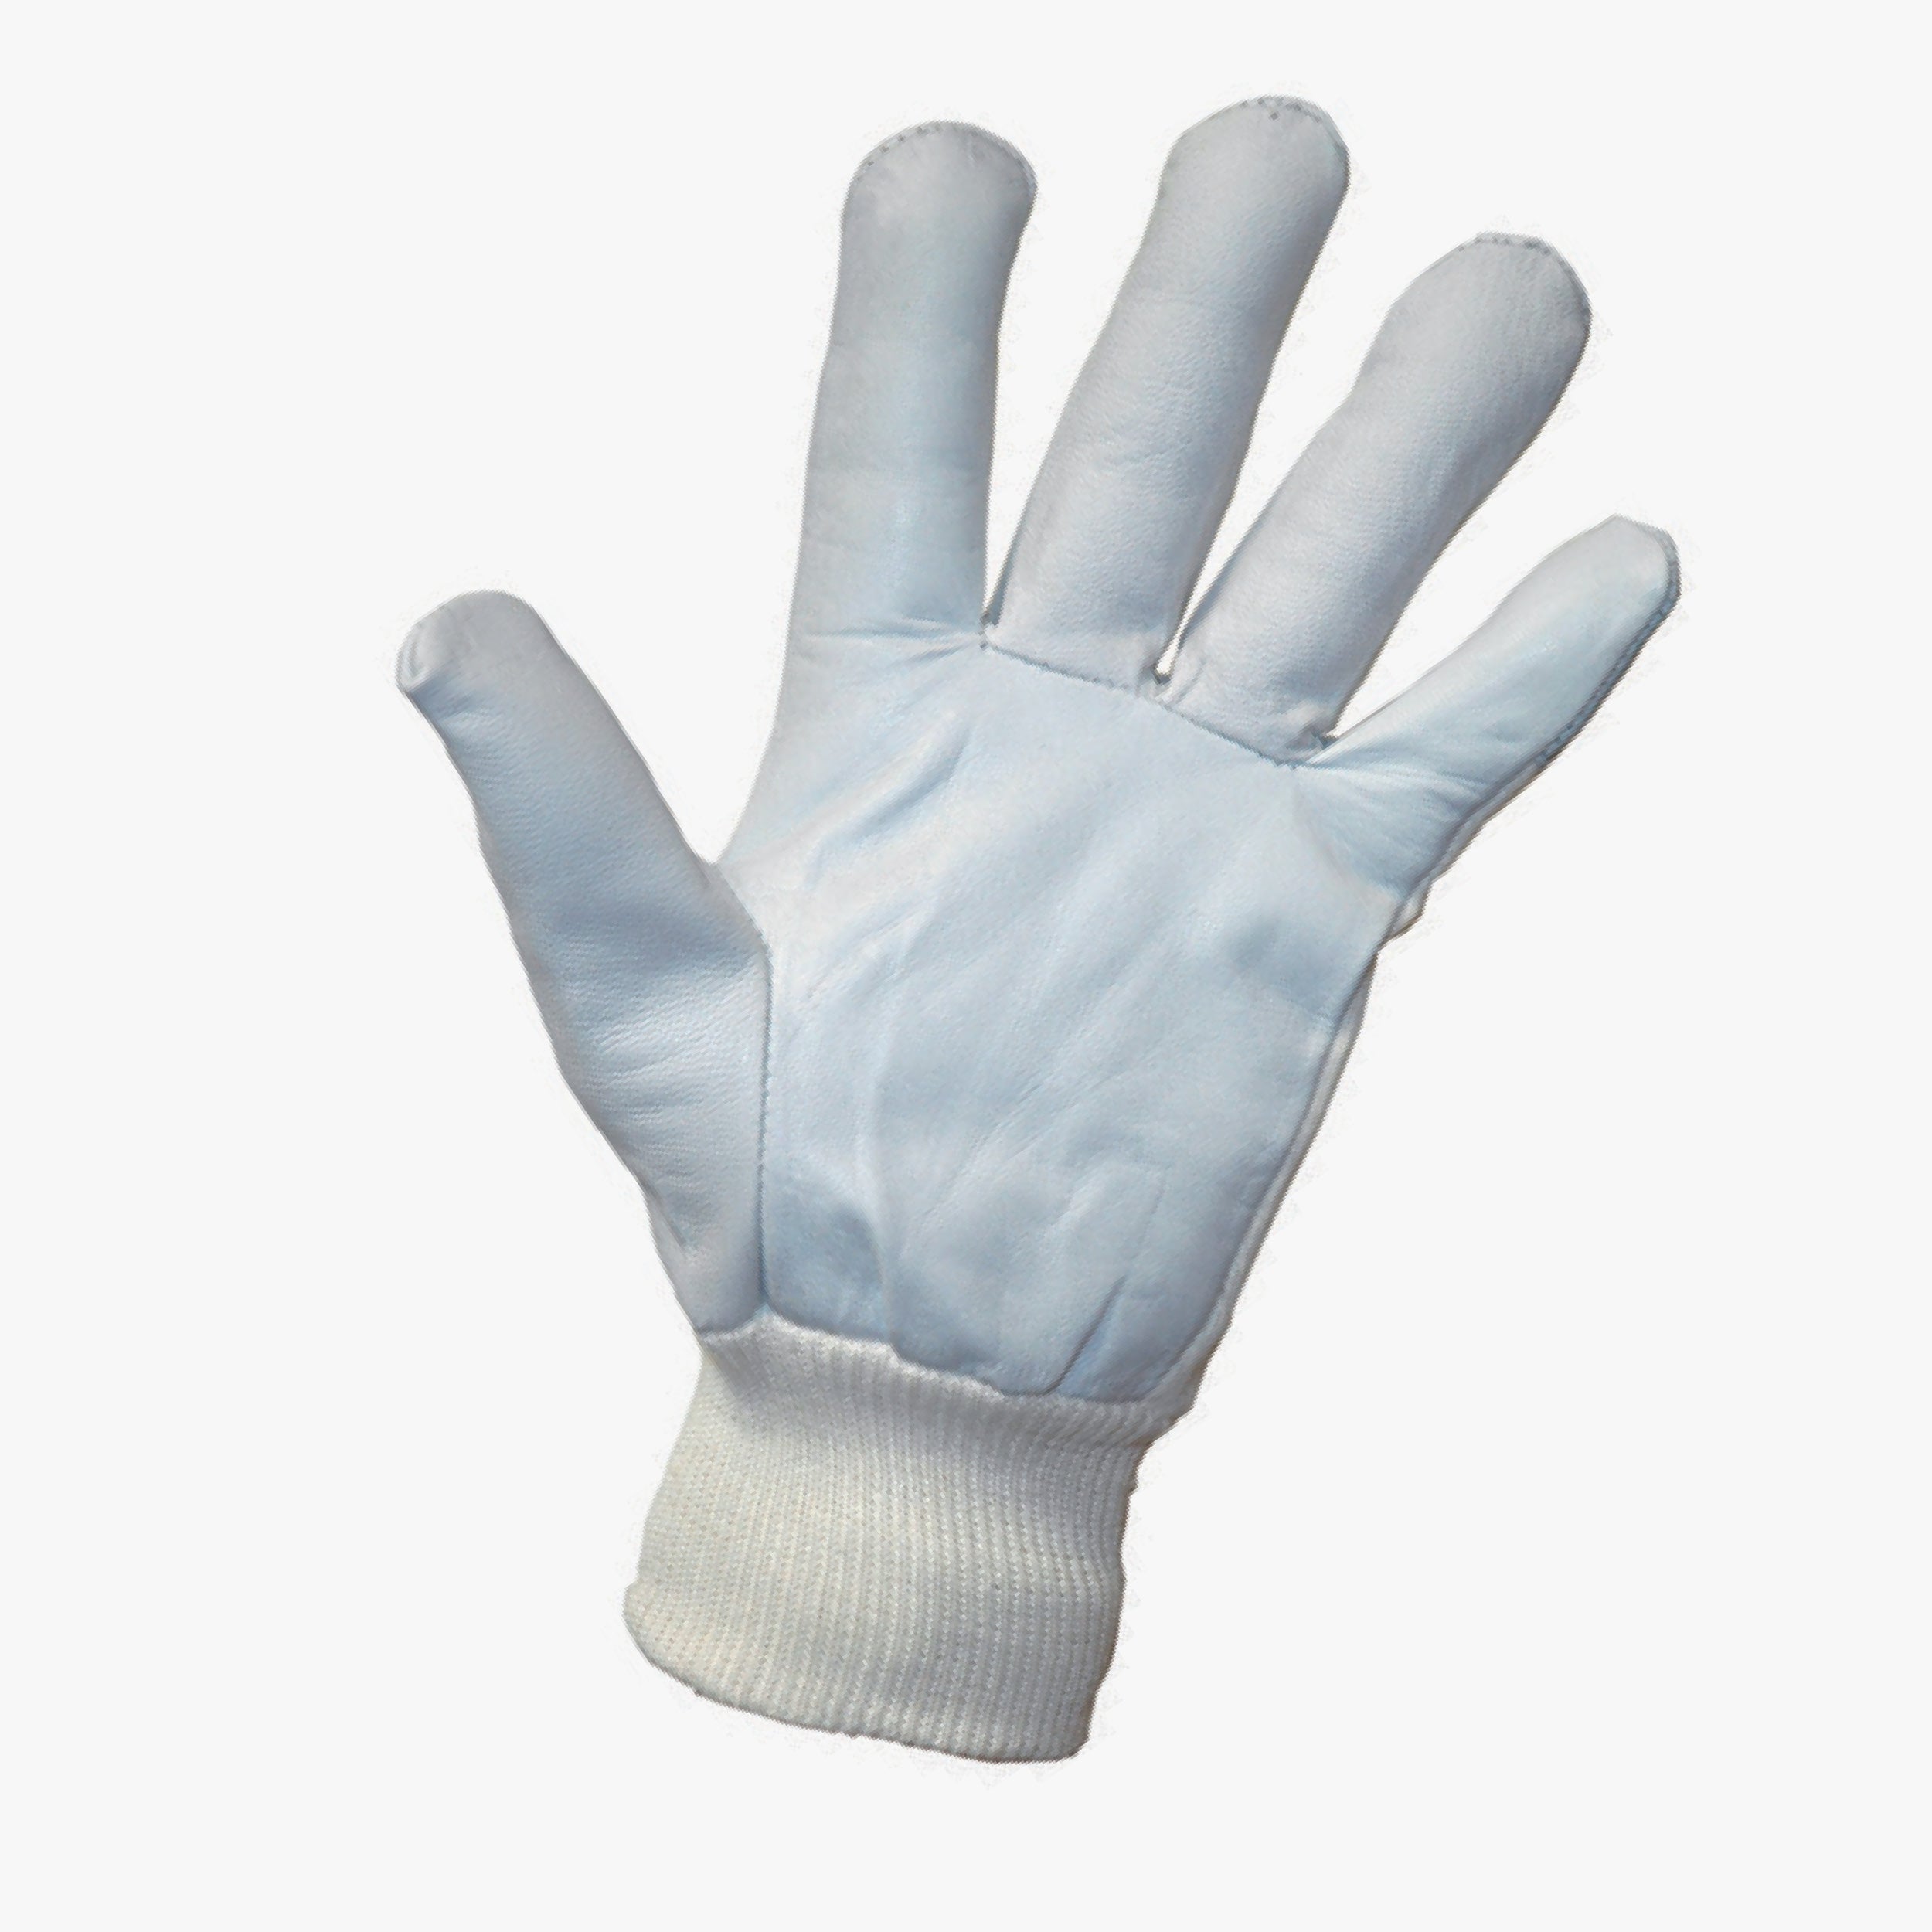 MONTONE / COTTON TOP Gloves 380021 size10 - 1pcs